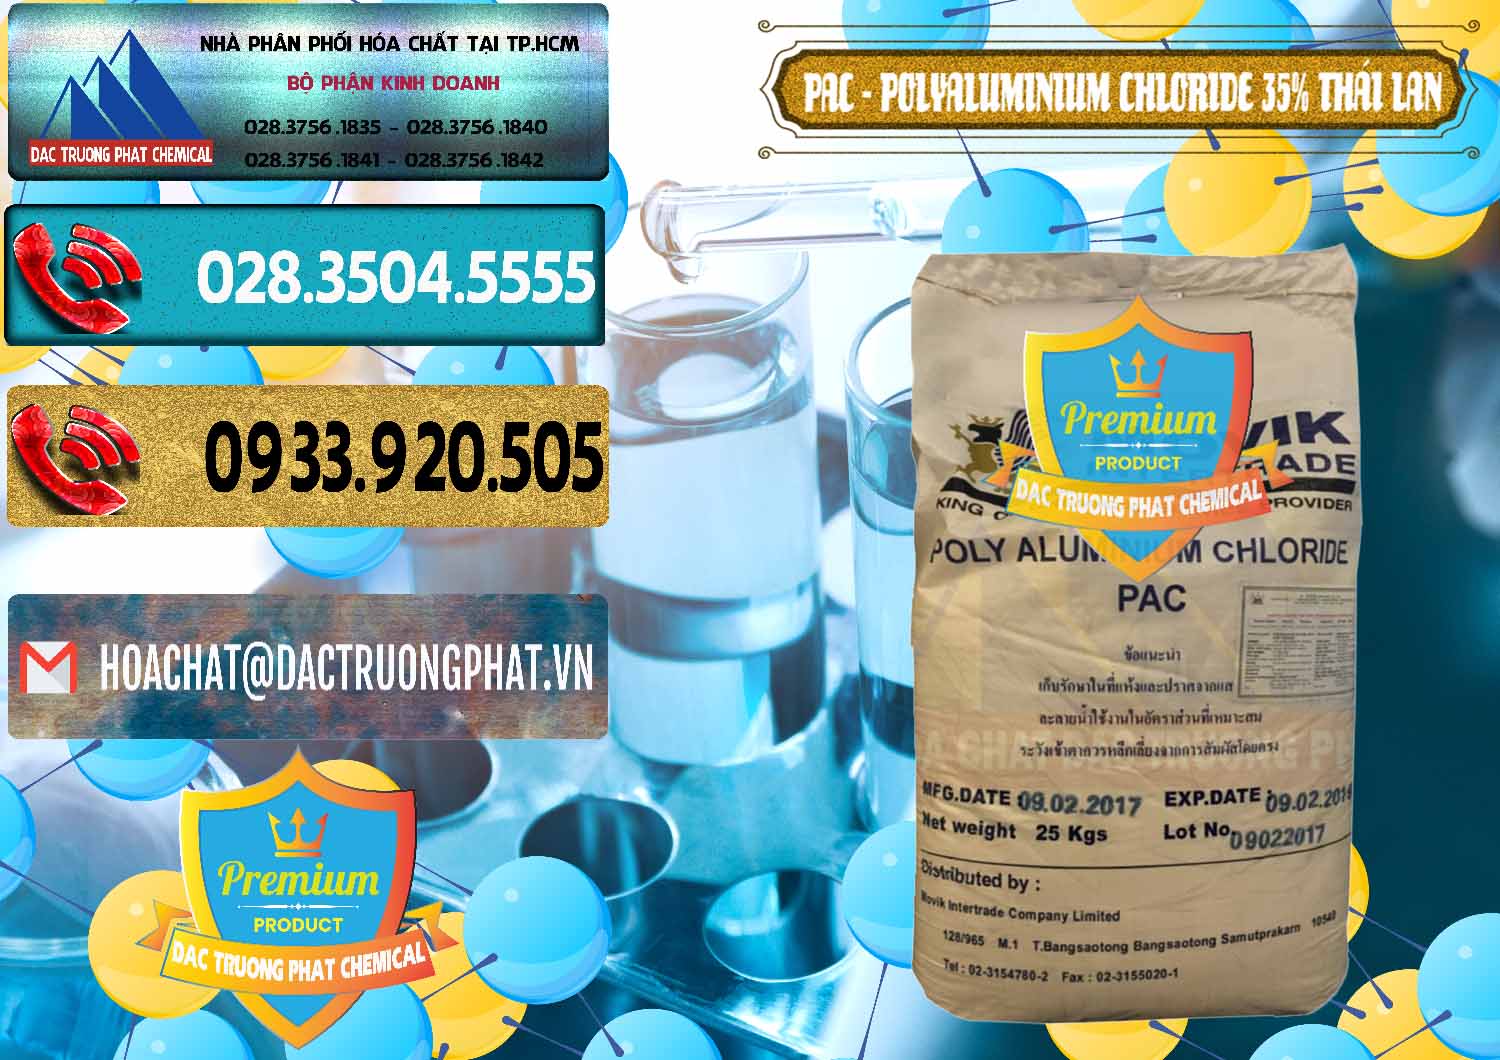 Cty bán và cung cấp PAC - Polyaluminium Chloride 35% Thái Lan Thailand - 0470 - Đơn vị nhập khẩu & phân phối hóa chất tại TP.HCM - hoachatdetnhuom.com